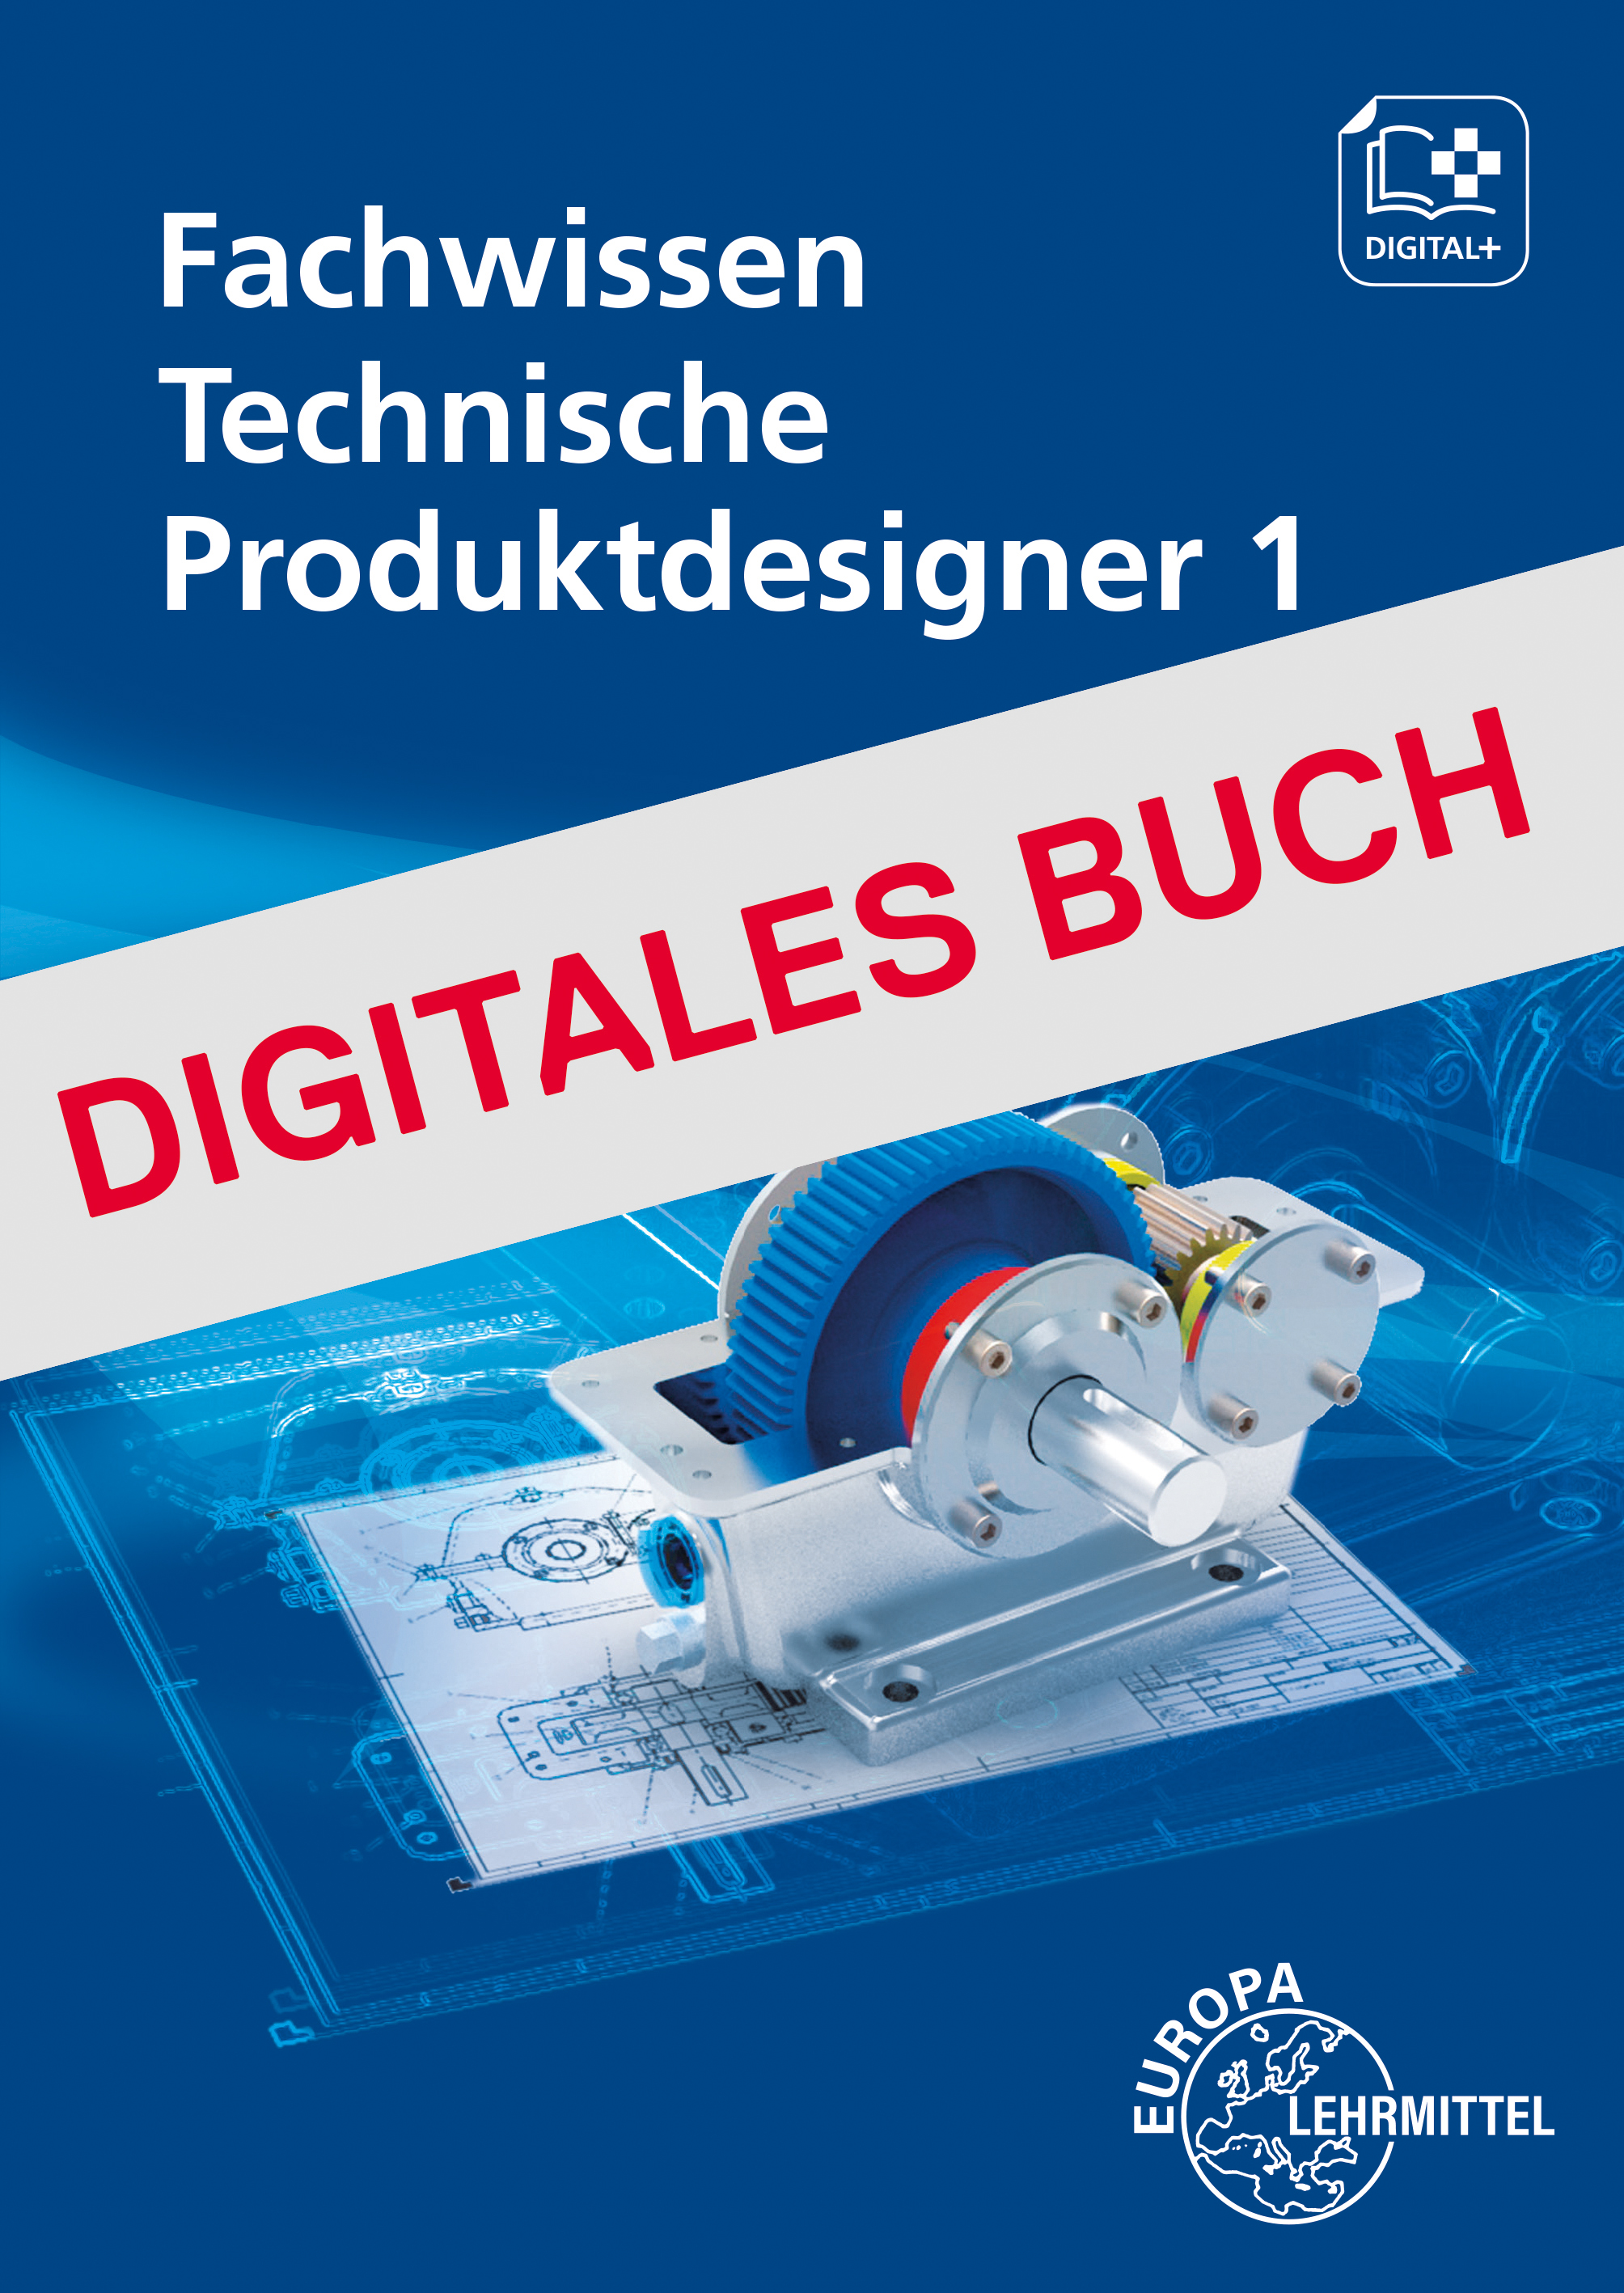 Fachwissen Technische Produktdesigner 1 - Digitales Buch